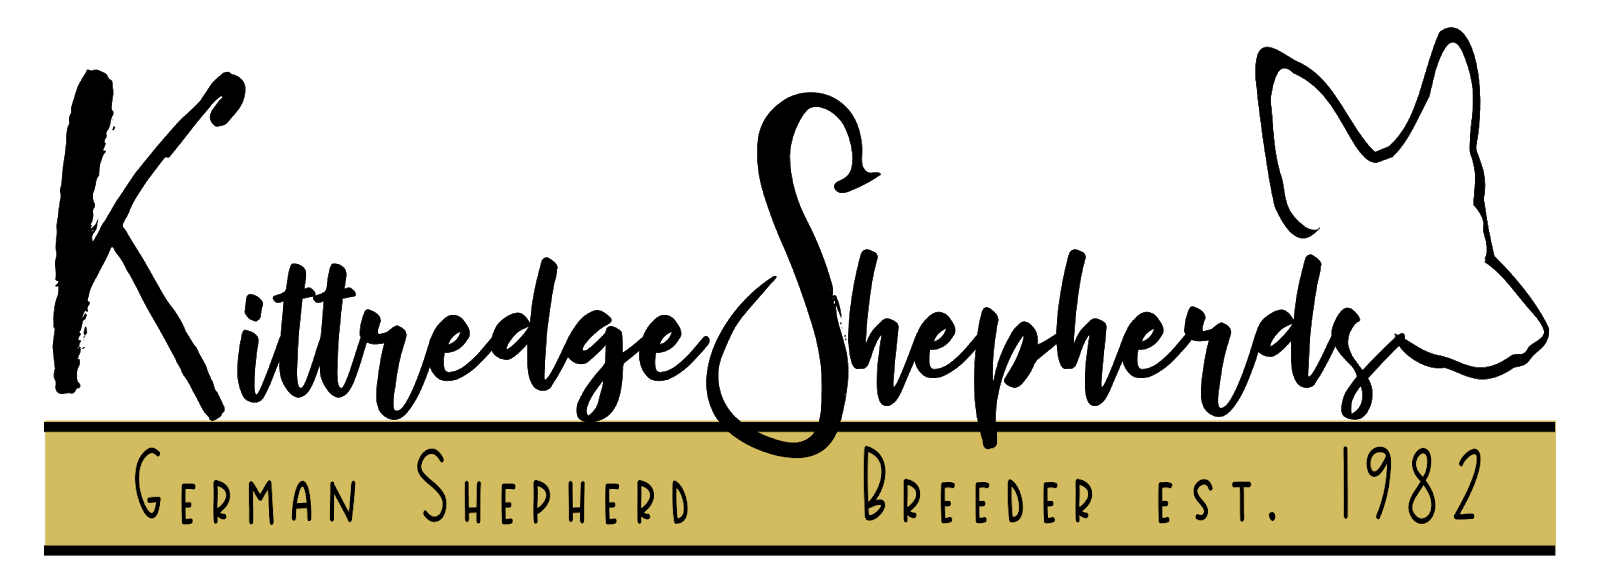 Kittredge Shepherds